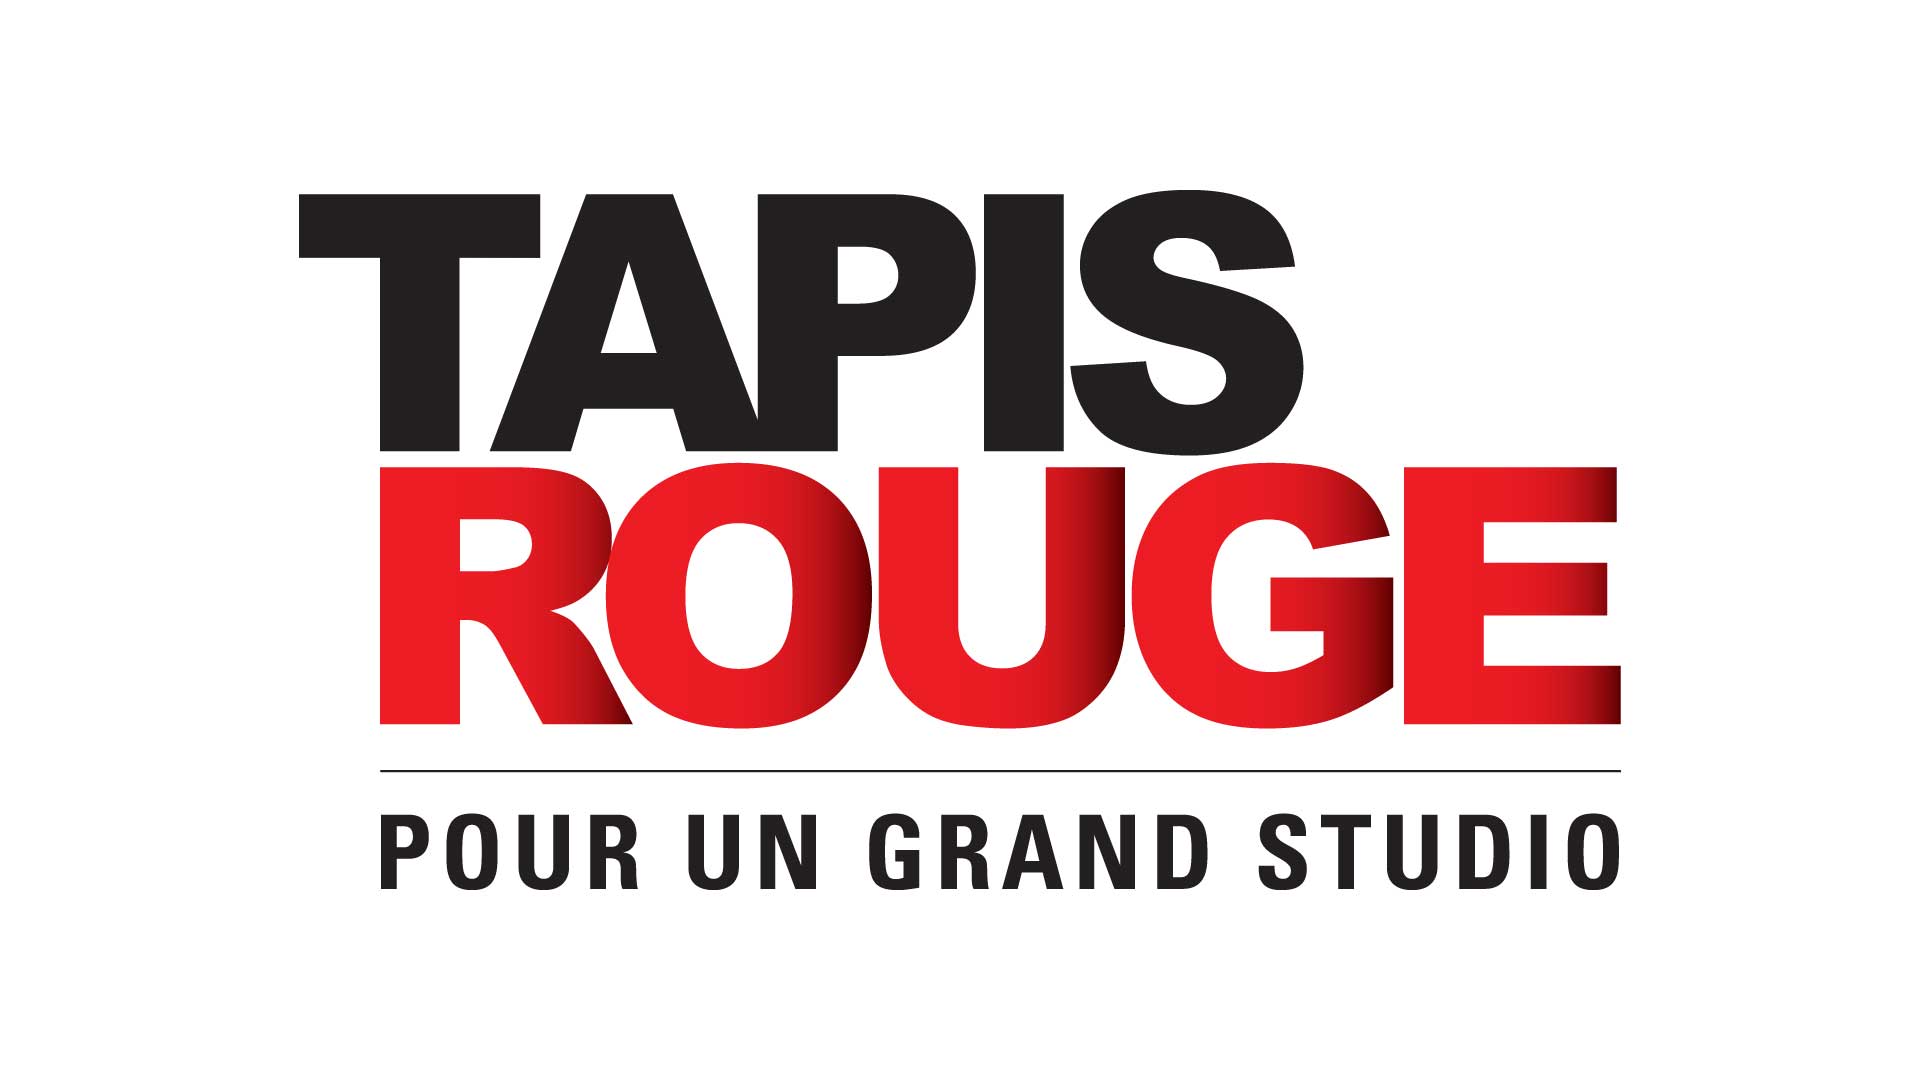 TAPIS ROUGE POUR UN GRAND STUDIO